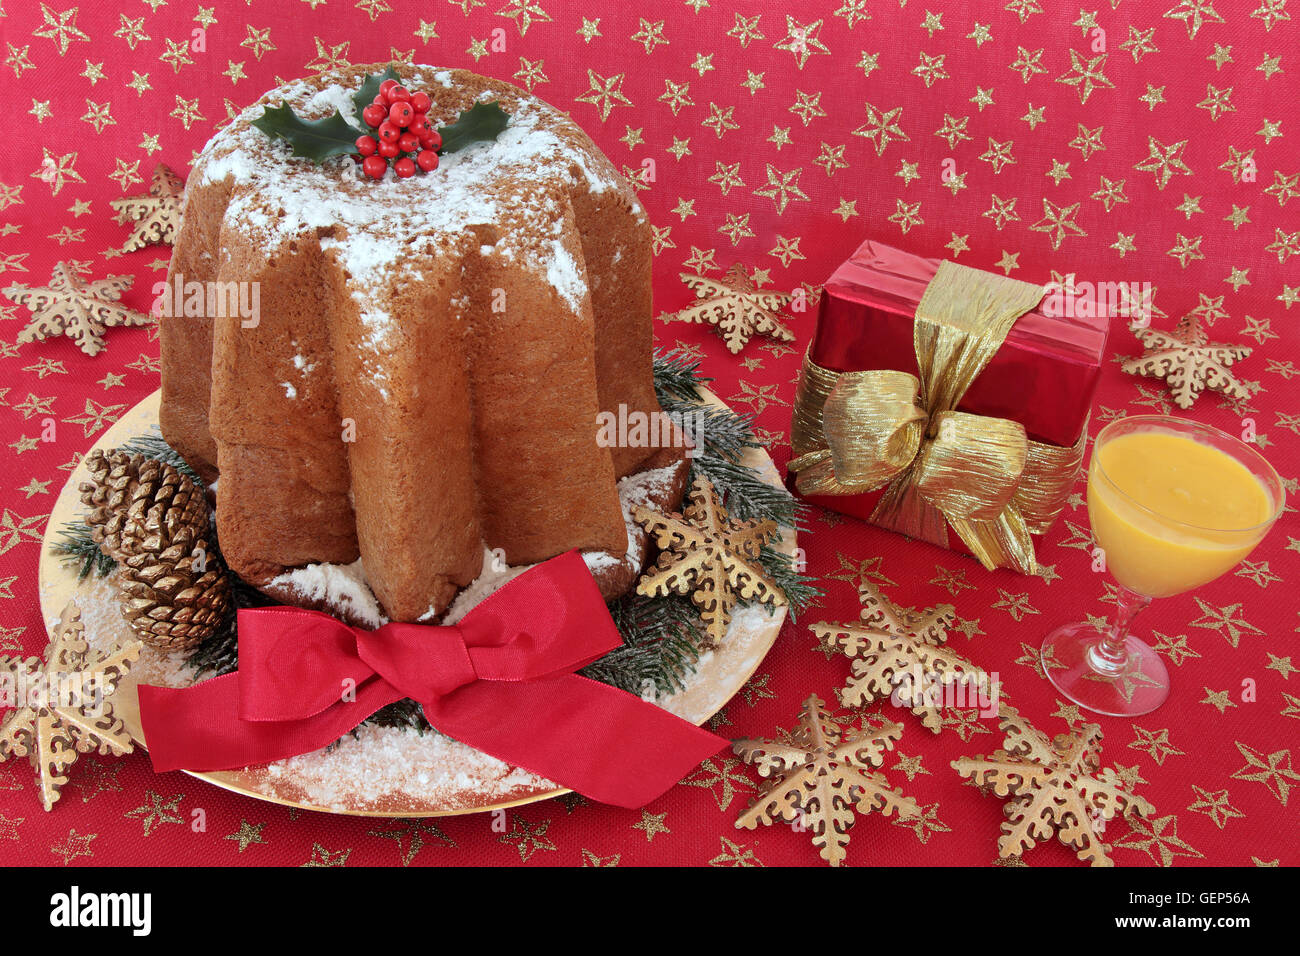 Pandoro torta di Natale con agrifoglio e nastro, uovo nog, il simbolo del fiocco di neve ninnolo decorazioni e confezione regalo su un rosso e oro panno a stella Foto Stock